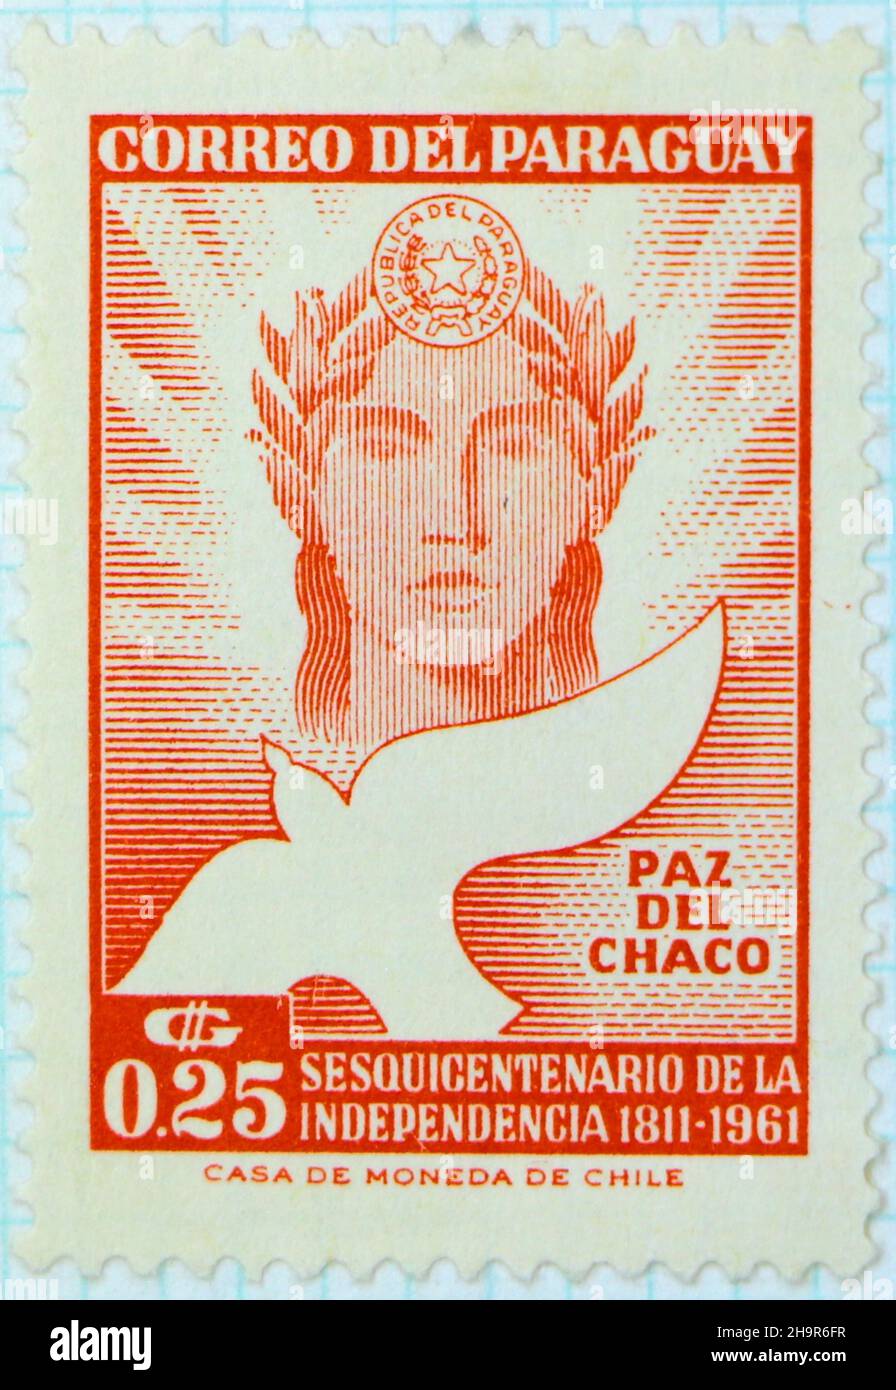 Photo d'un timbre rouge de 0,25 c non utilisé du Paraguay célébrant le 150th anniversaire de l'indépendance en 1961 Banque D'Images